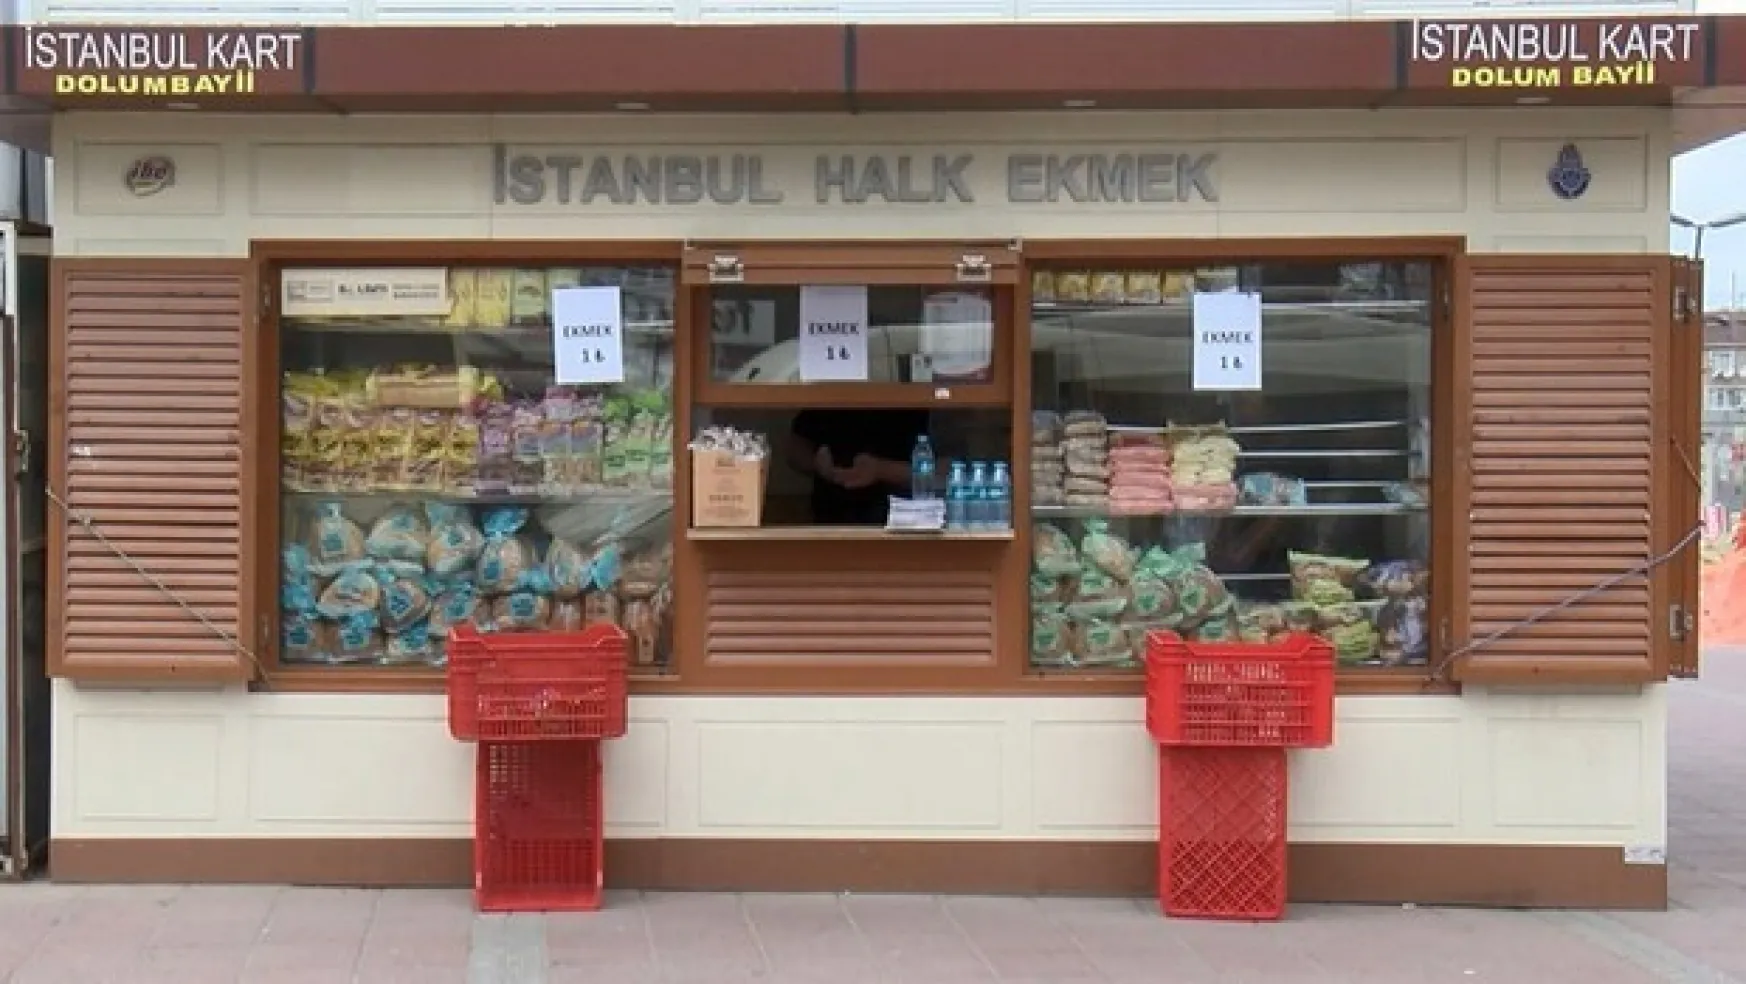 İstanbul'da Halk Ekmeğe yüzde 33 zam